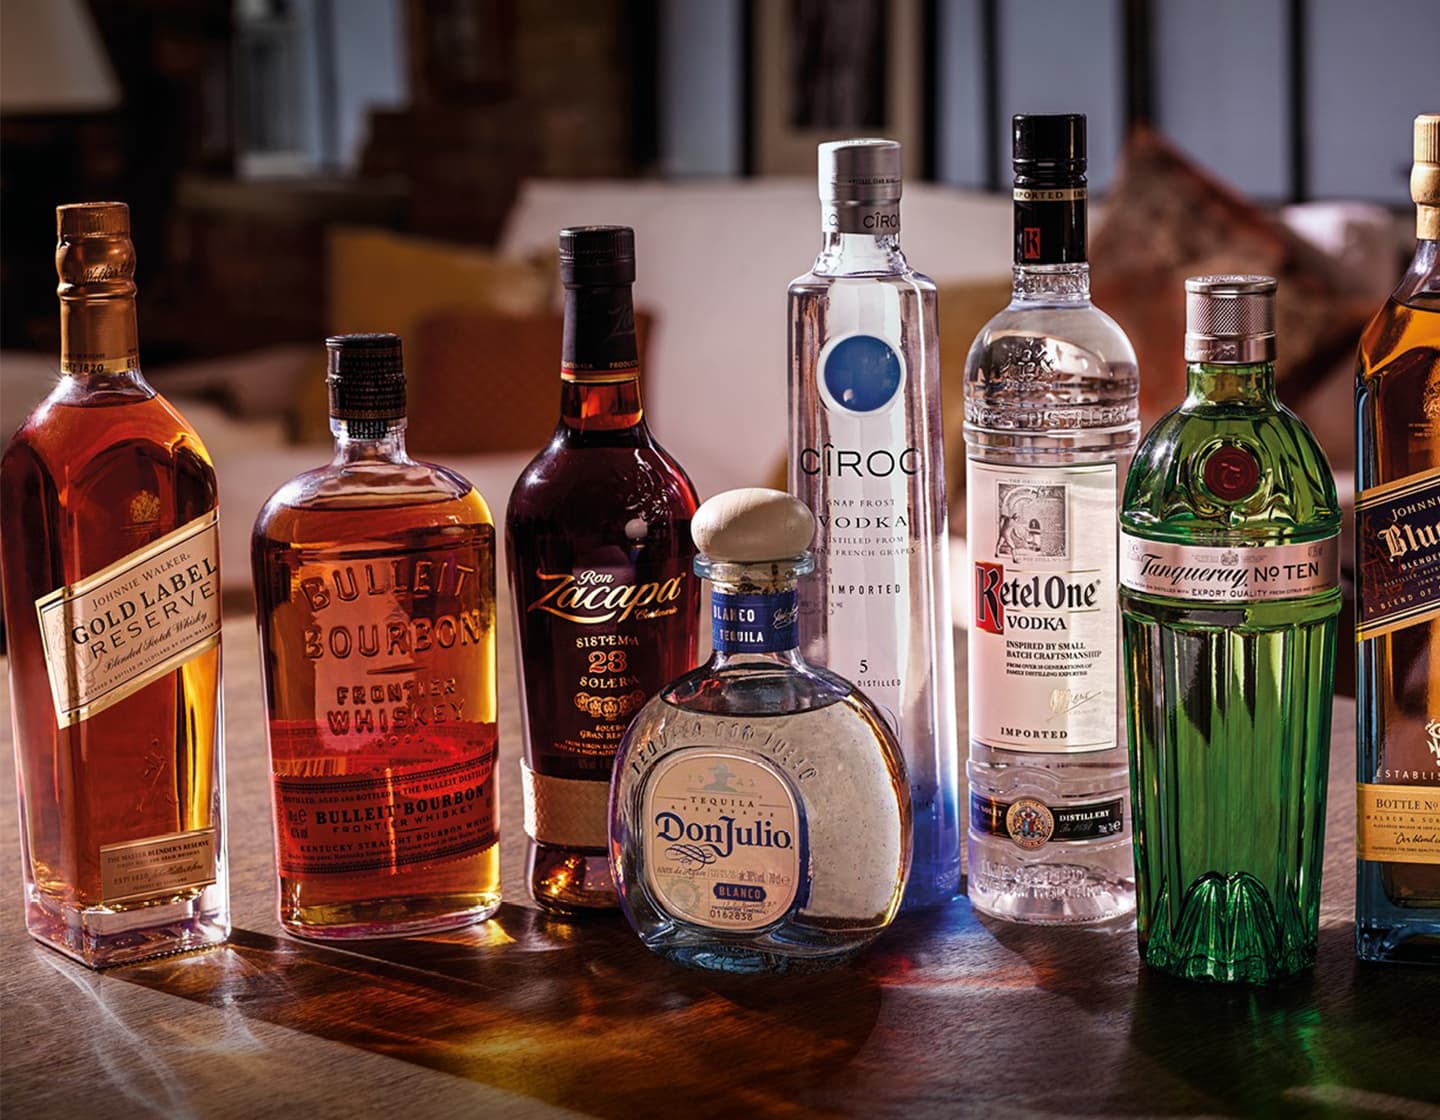 Eine Gruppe von Flaschen mit Alkohol, von links nach rechts: Johnnie Walker Gold Label Reserve, Bulleit Bourbon, Zacapa, Don Julio, Cîroc, Ketel One, Tanqueray No Ten und Johnnie Walker Blue Label. 